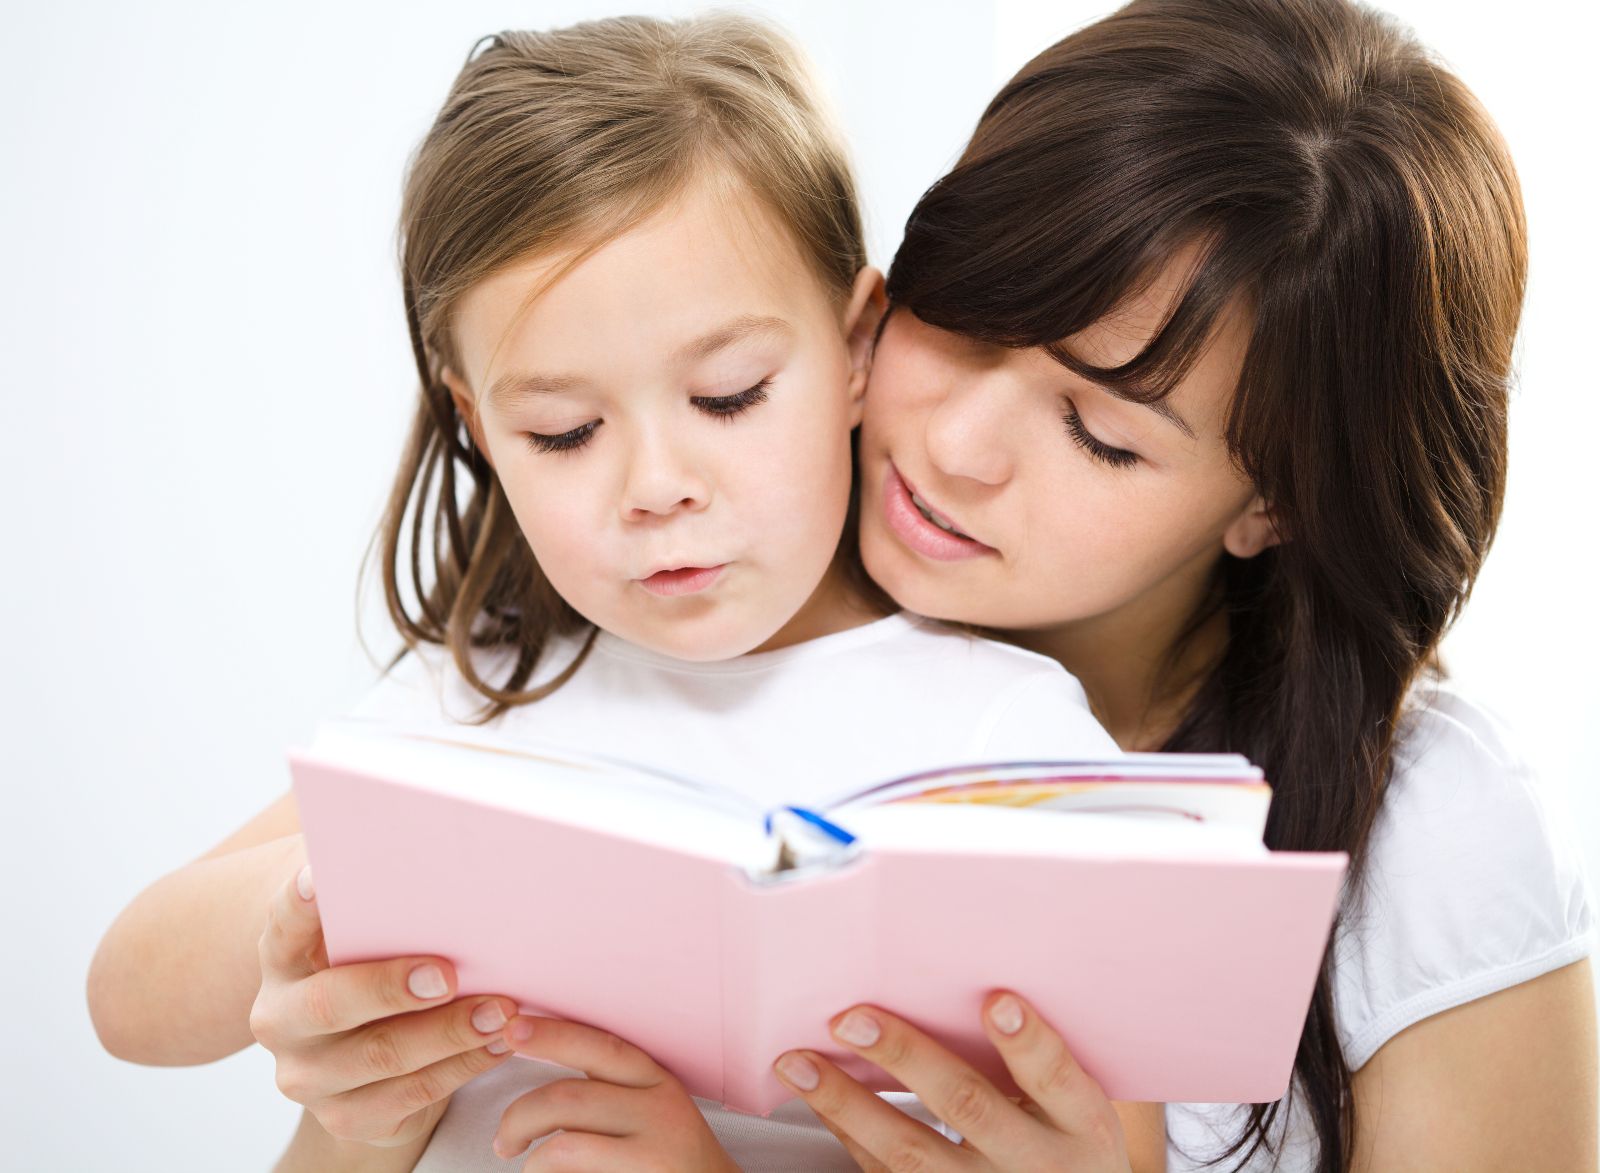 Madre recargada con hija que se encuentra leyendo